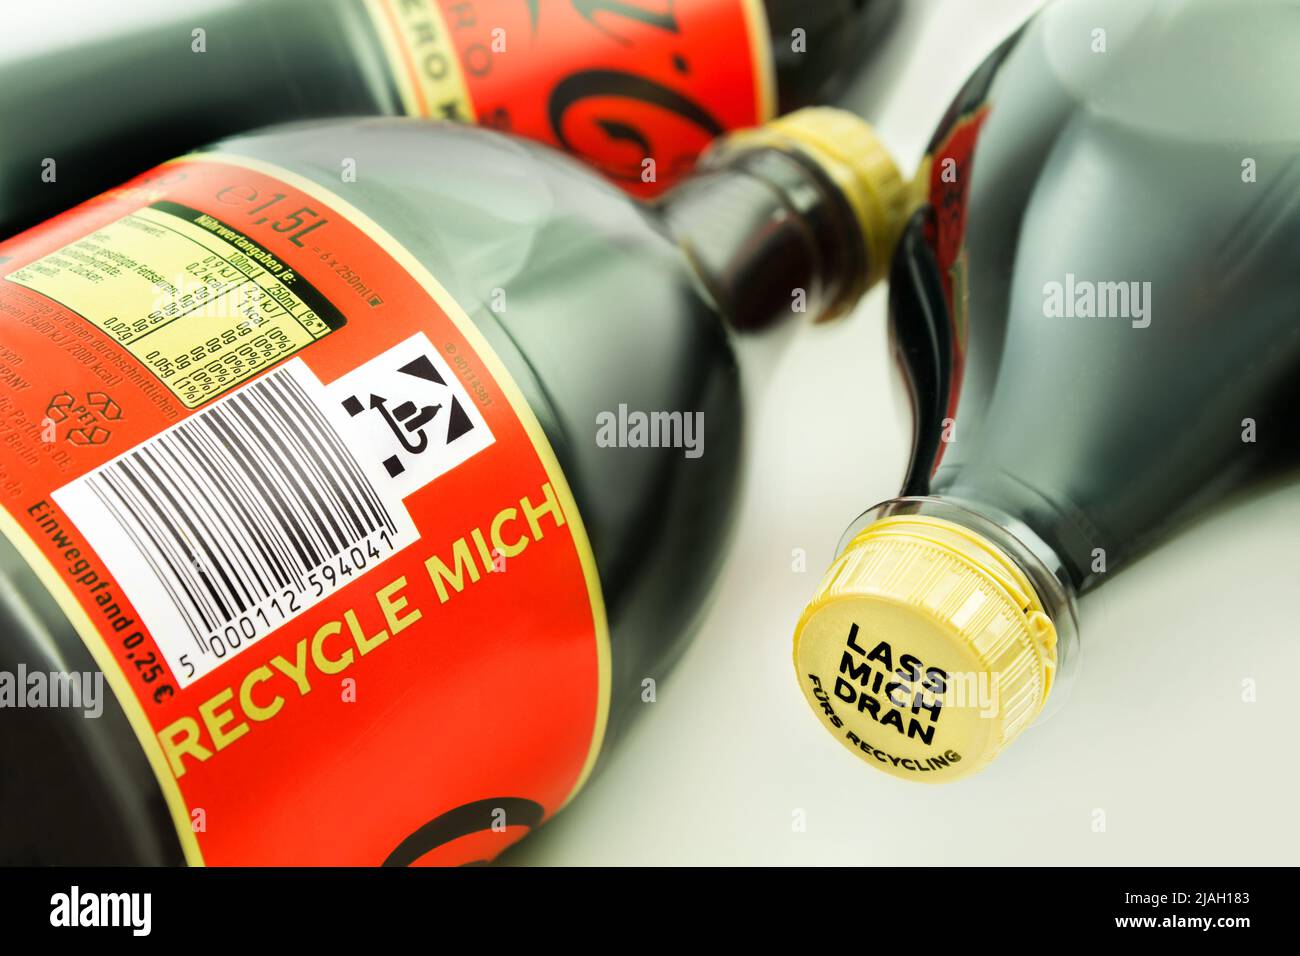 3 Flaschen Coca-Cola Zero Koffein und Zucker 1,5 Liter mit Recycling Label Stock Photo